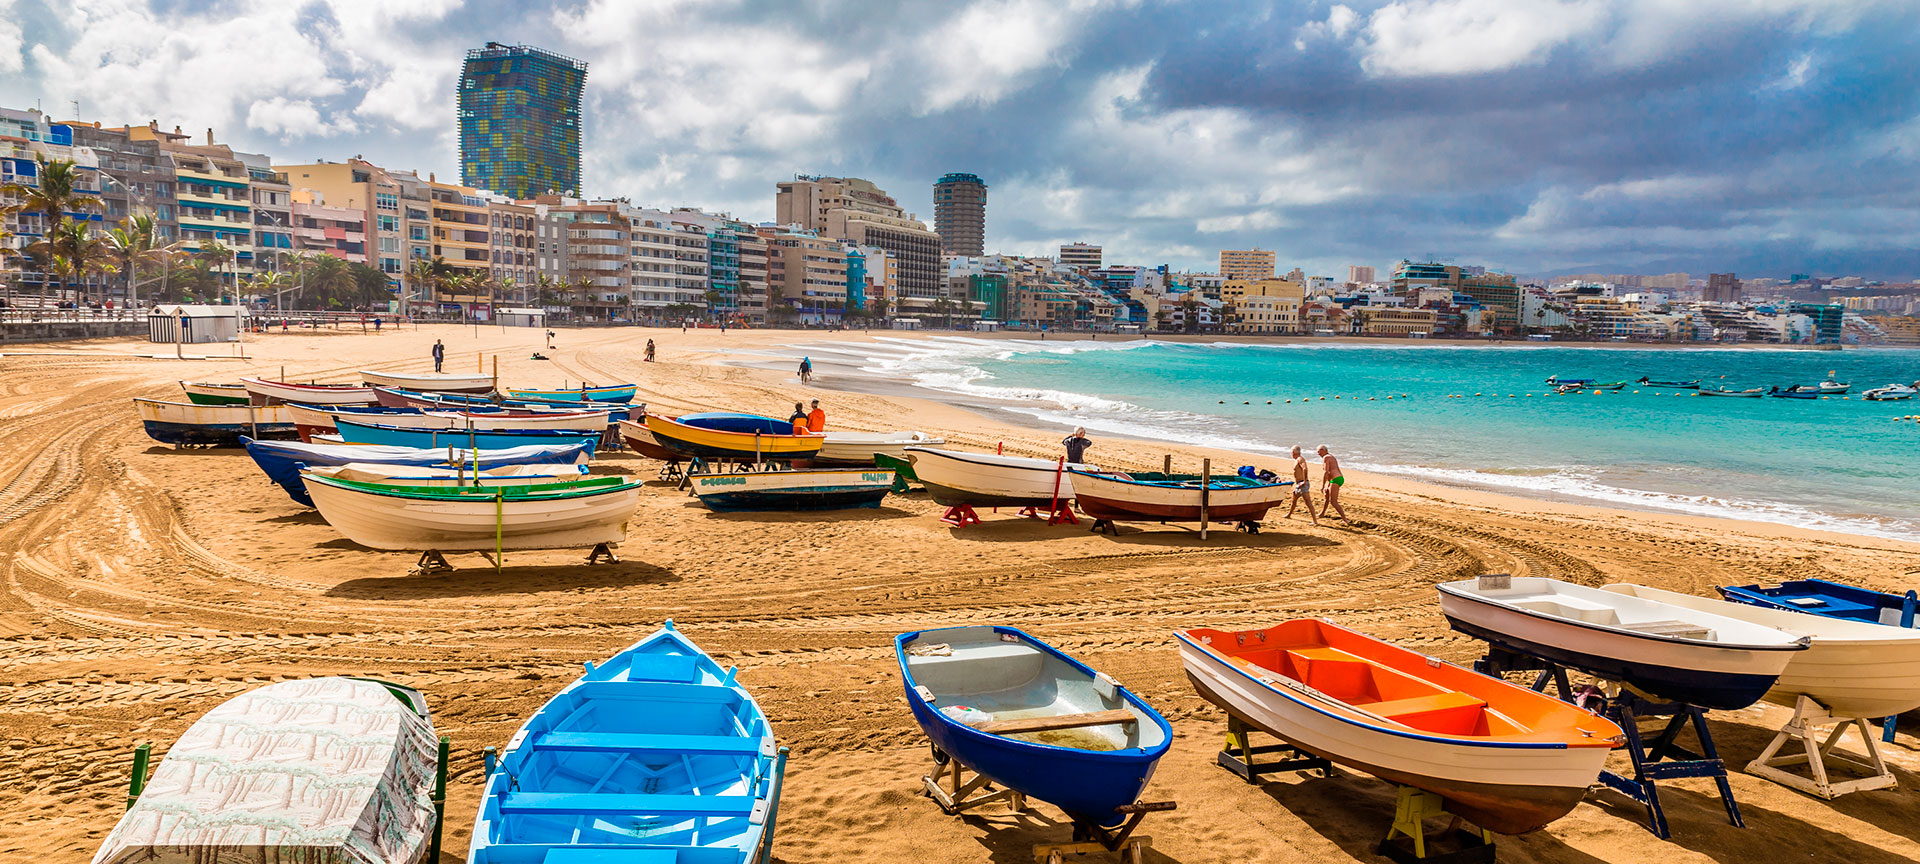 Beach: Las Canteras, Las Palmas de Gran Canaria